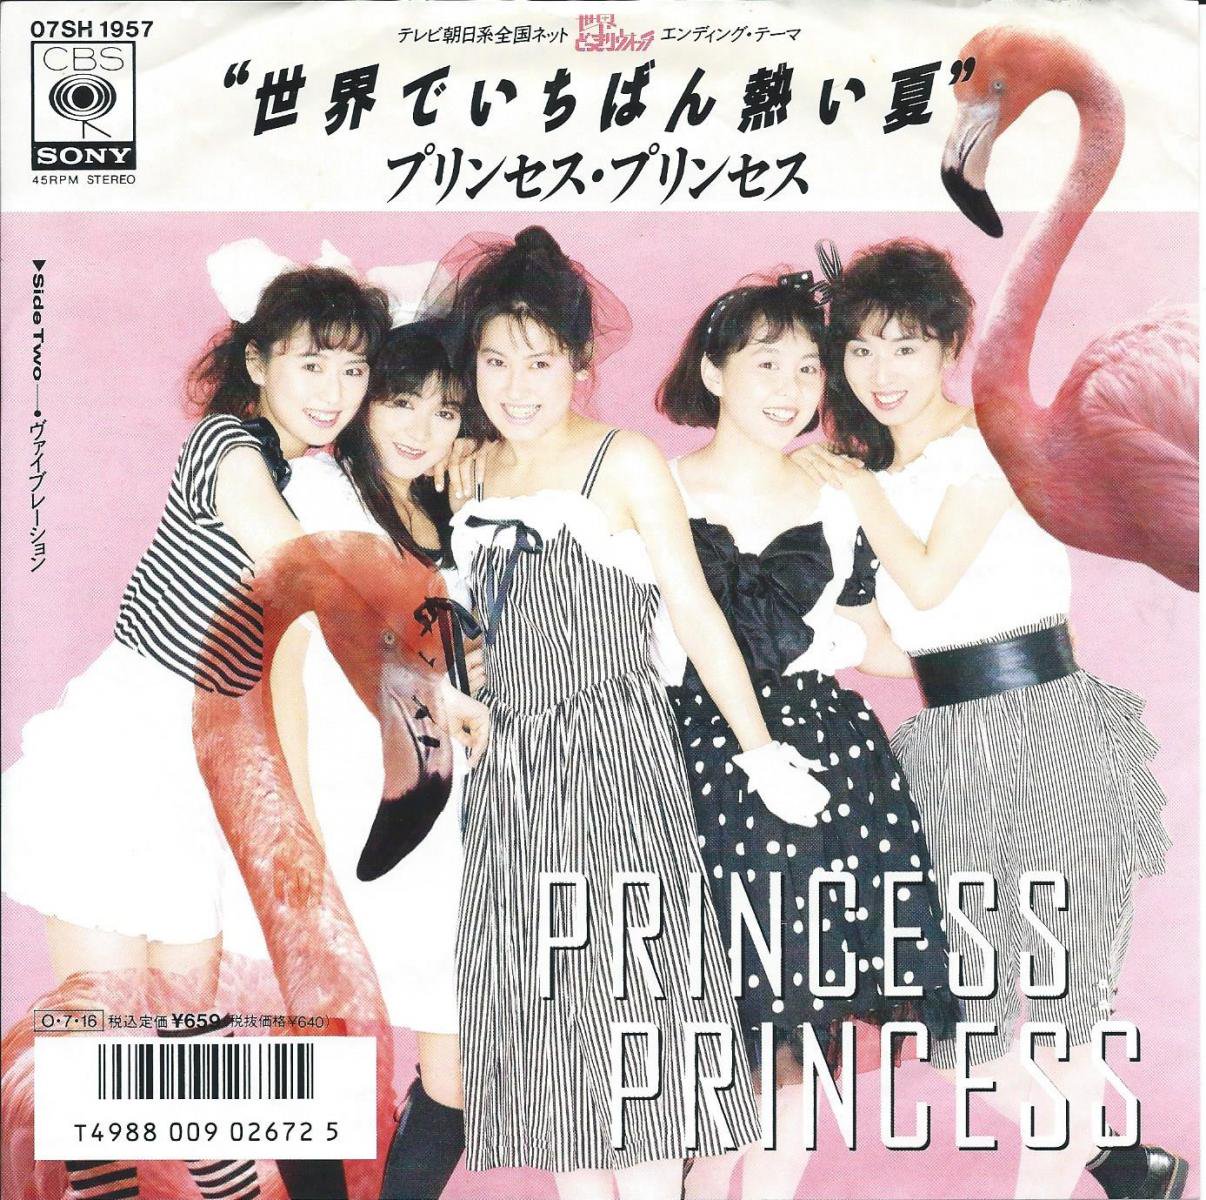 プリンセス・プリンセス PRINCESS PRINCESS / 世界でいちばん熱い夏 (7 